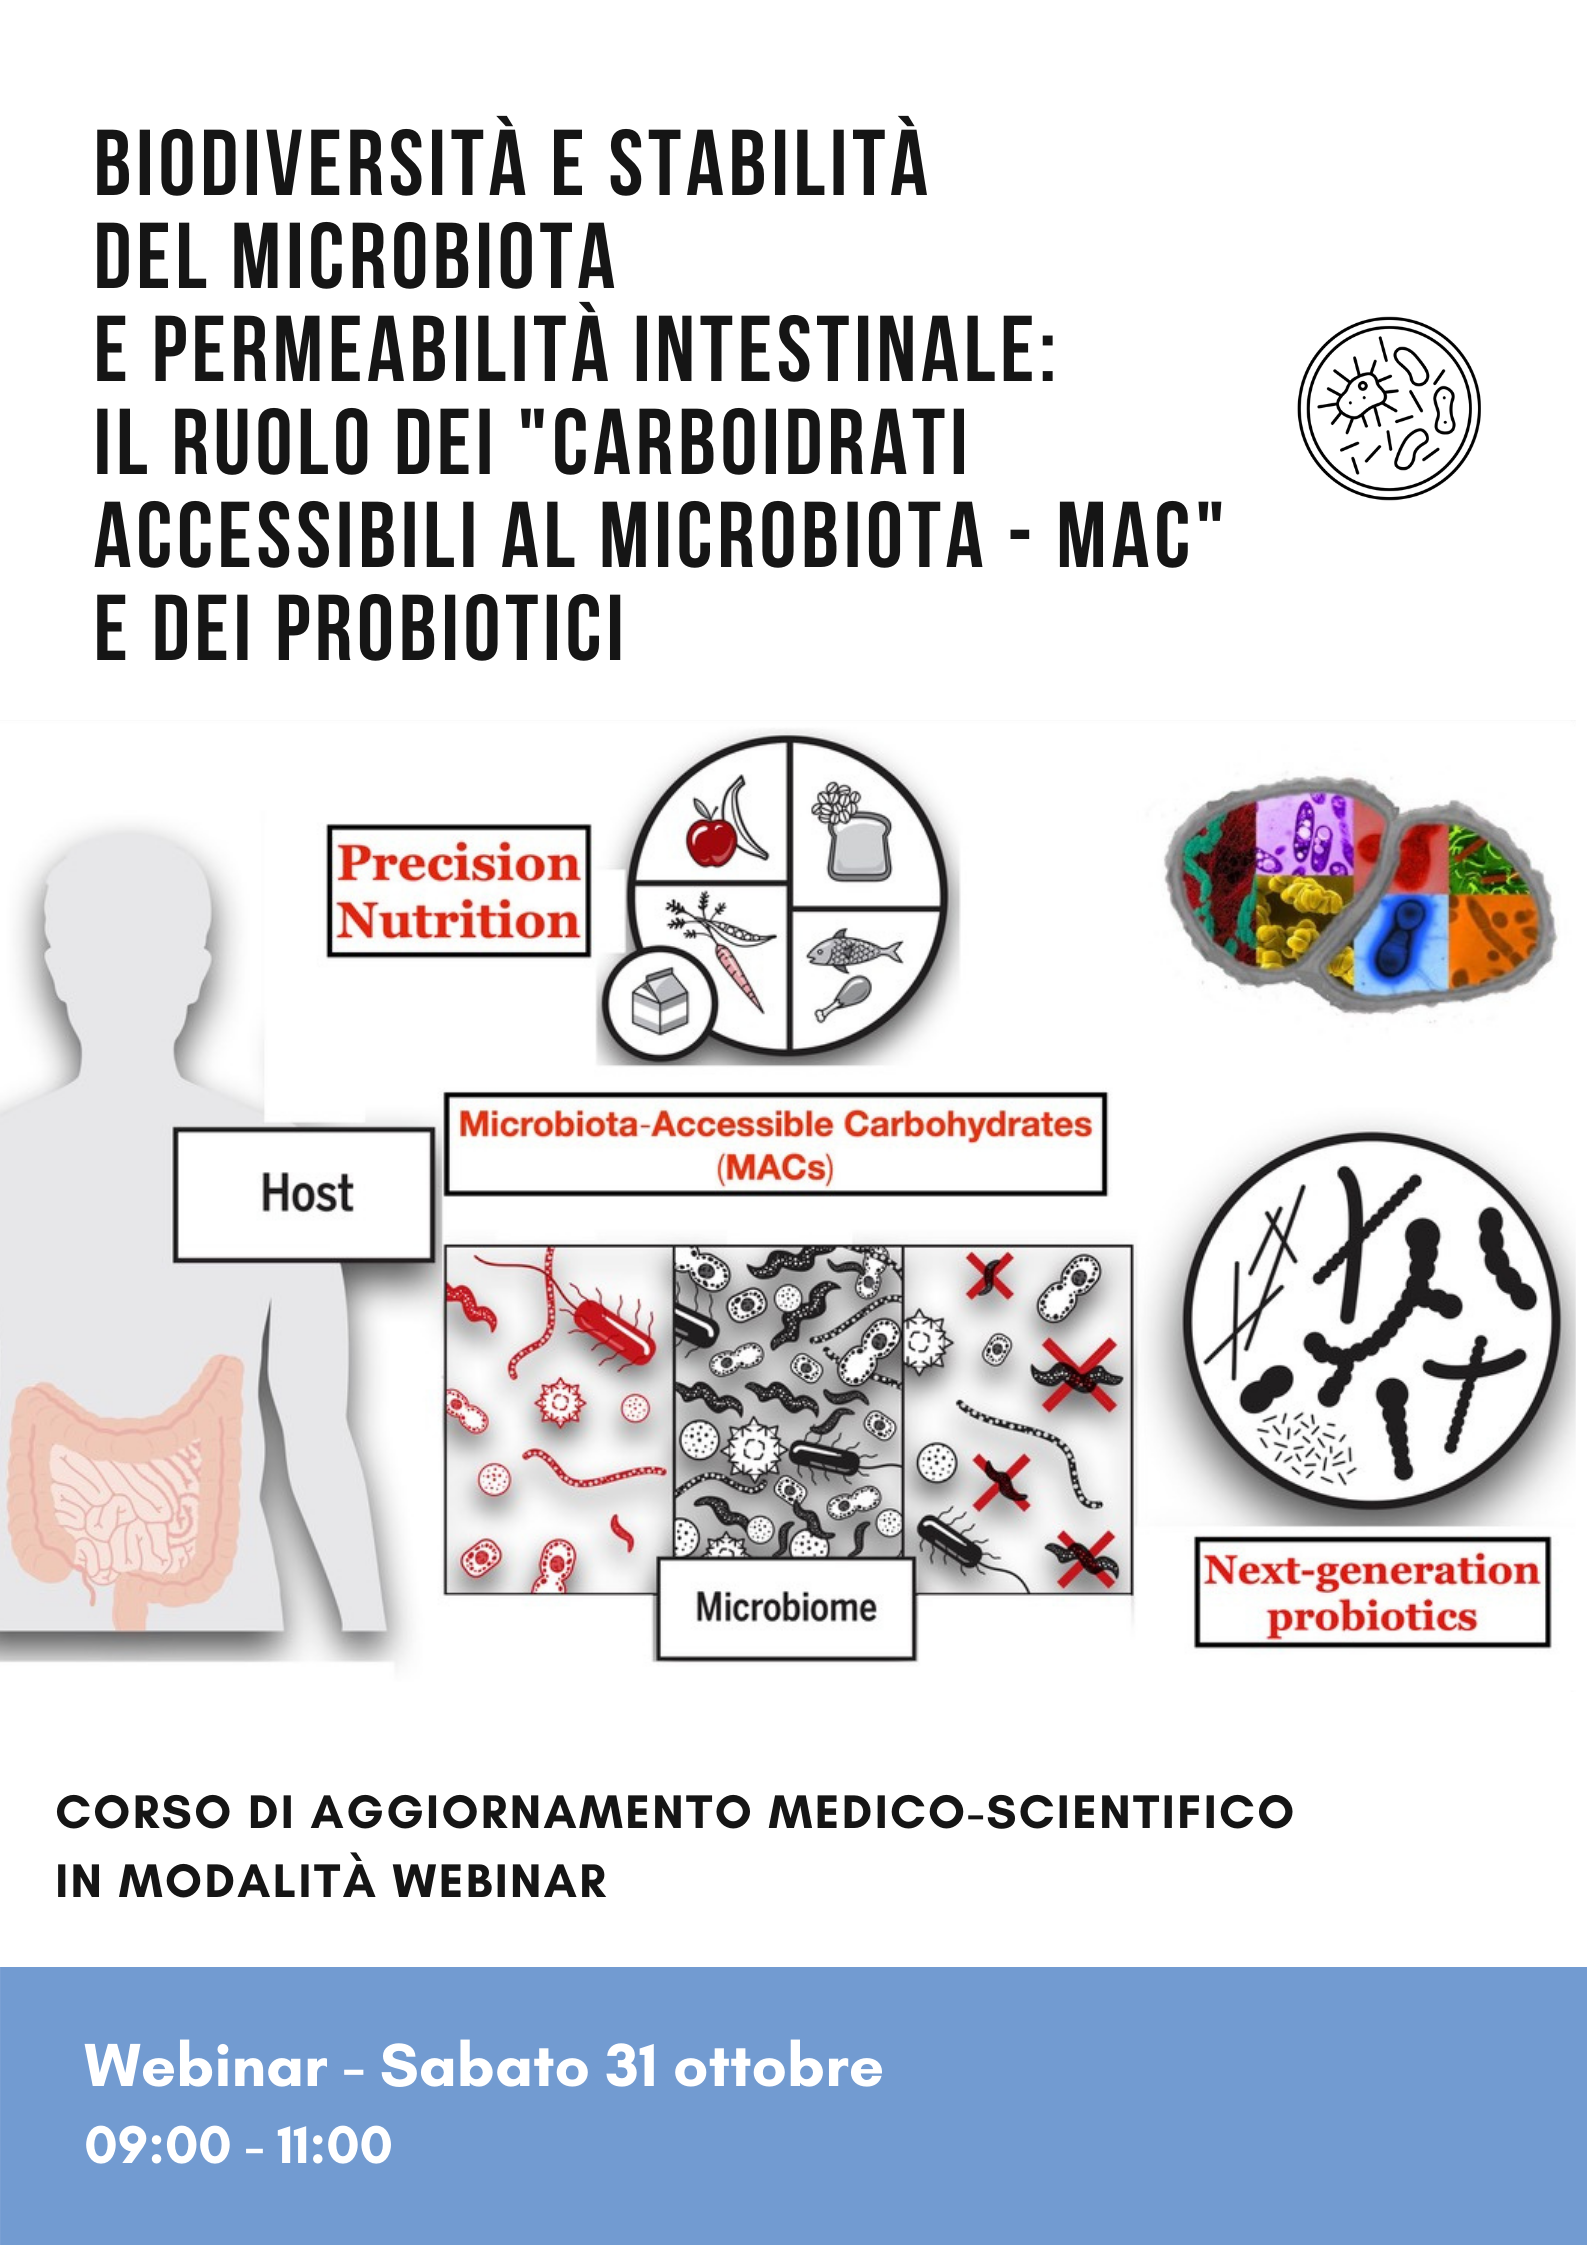 Biodiversità e stabilità del Microbiota e permeabilità intestinale: il ruolo dei "carboidrati accessibili al Microbiota - MAC" e dei probiotici